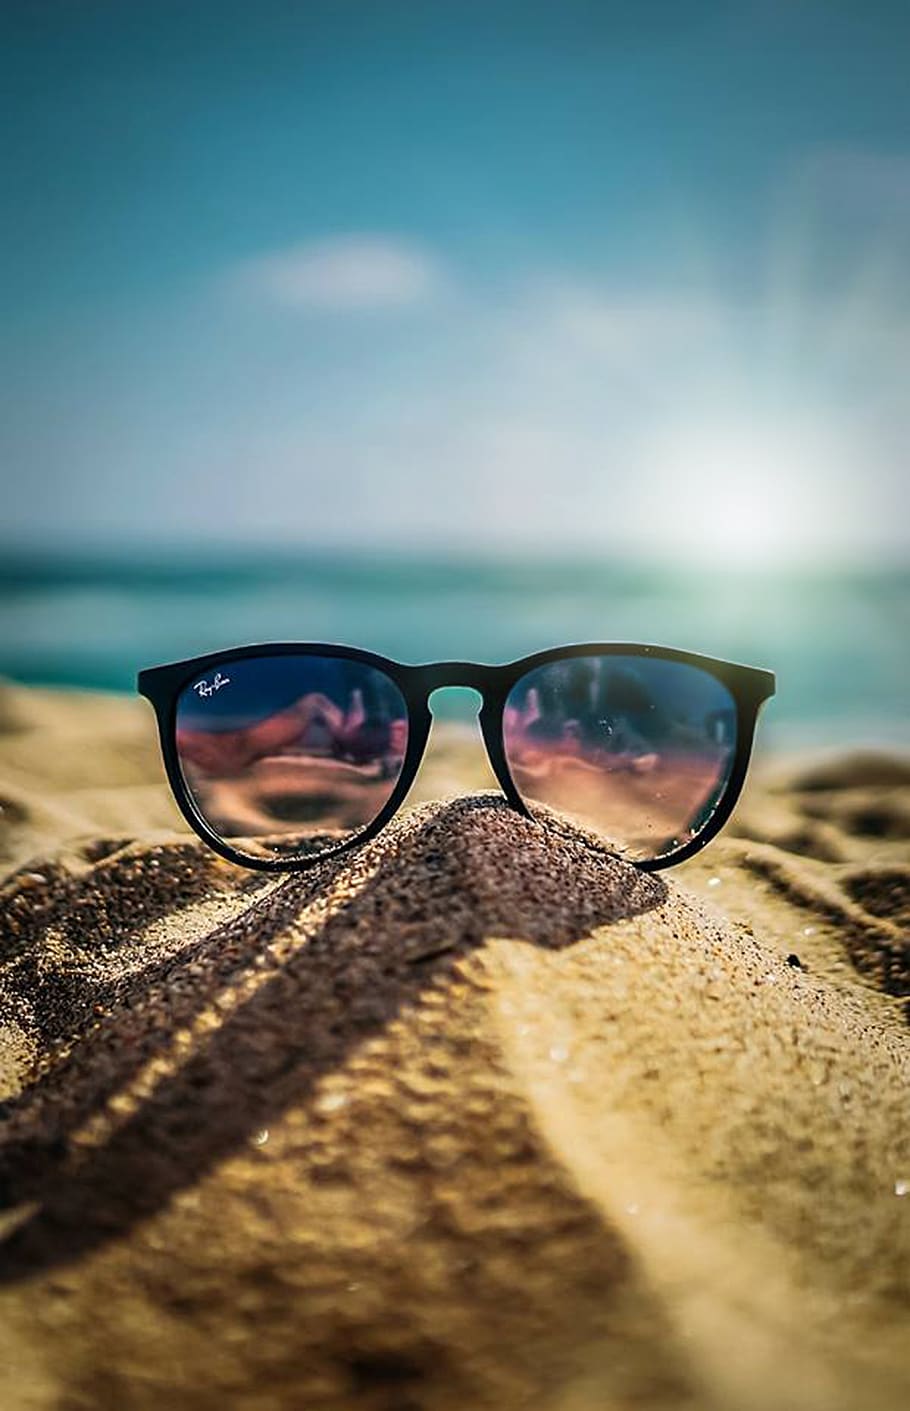 musim panas, pantai, pasir, matahari, hari libur, laut, langit, biru, kacamata, kacamata hitam